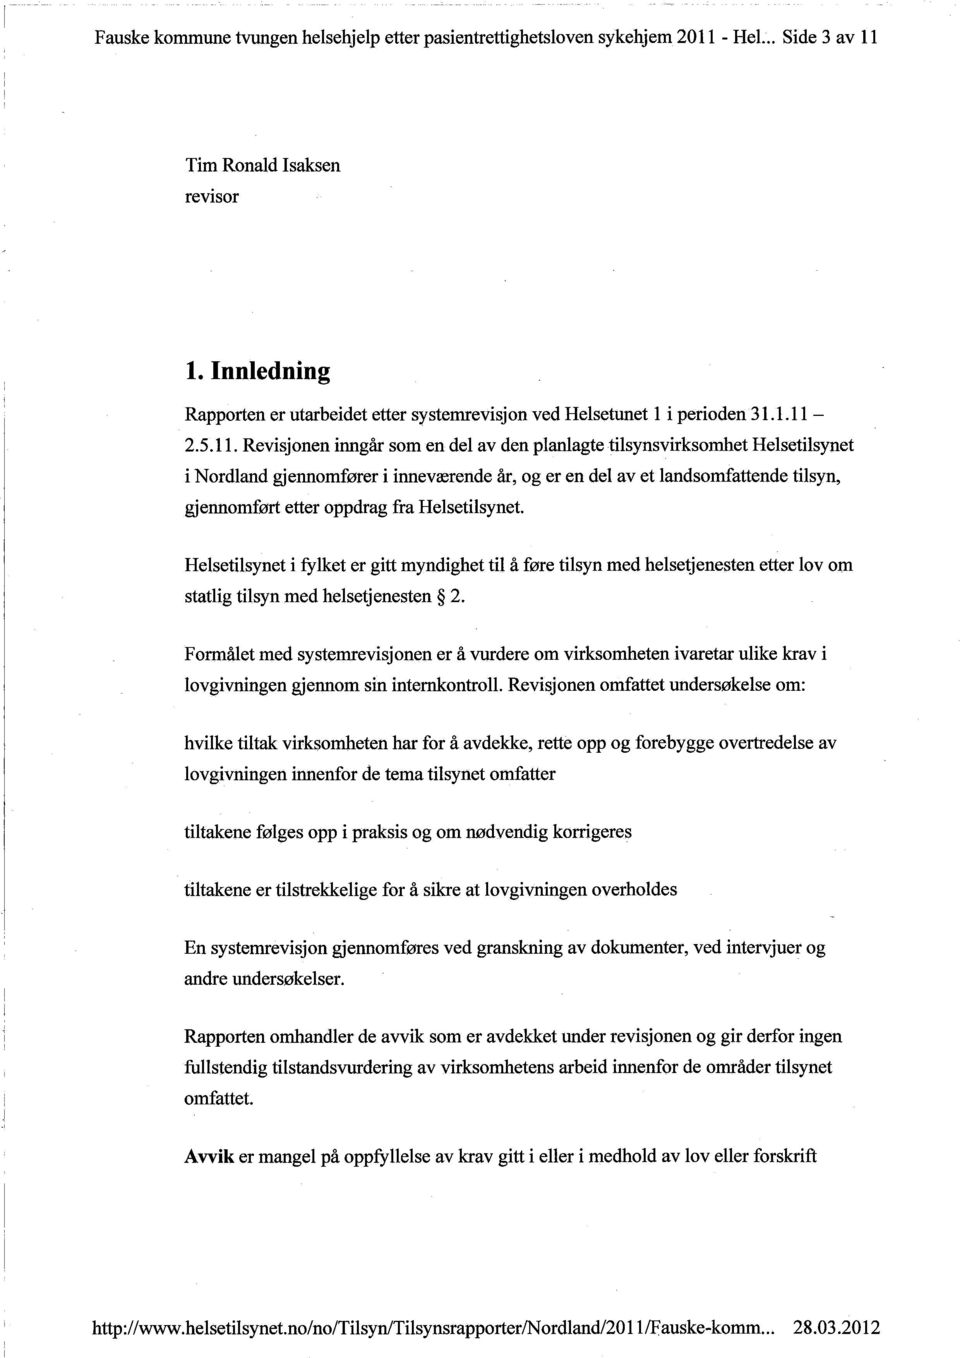 2.5.11. Revisjonen inngår som en del av den planlagte tilsynsvirksomhet Helsetilsynet i Nordland gjennomfører i inneværende år, og er en del av gjennomført etter oppdrag fra Helsetilsynet.